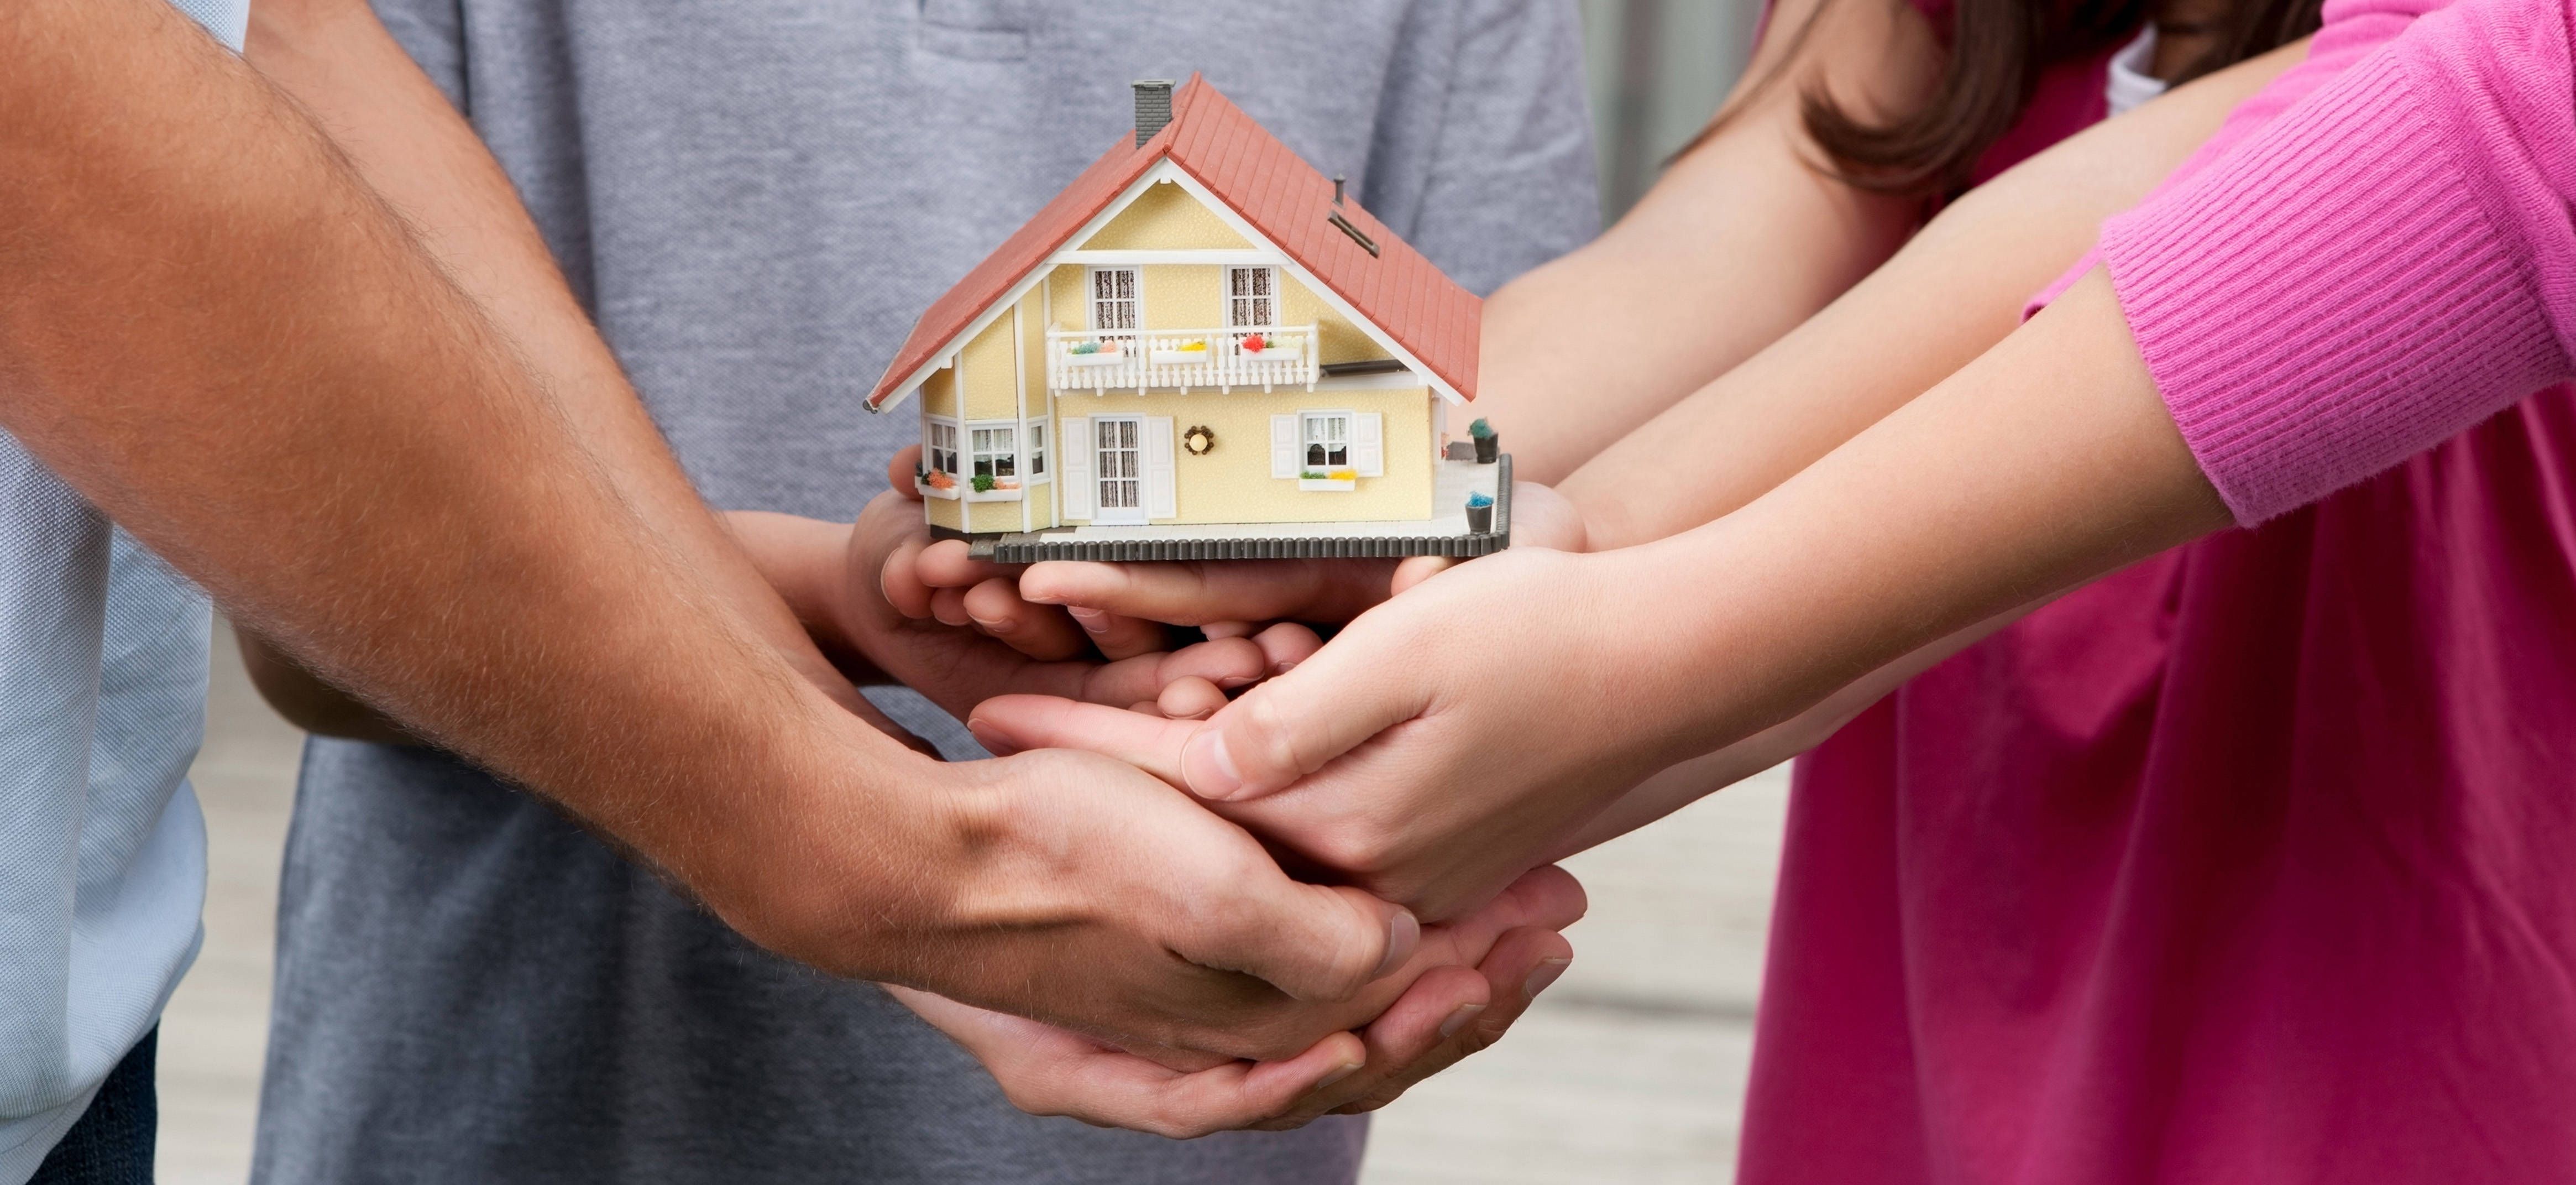 Какие есть плюсы и минусы завещания на квартиру: как завещается недвижимость + особенности законодательства, практика, примеры